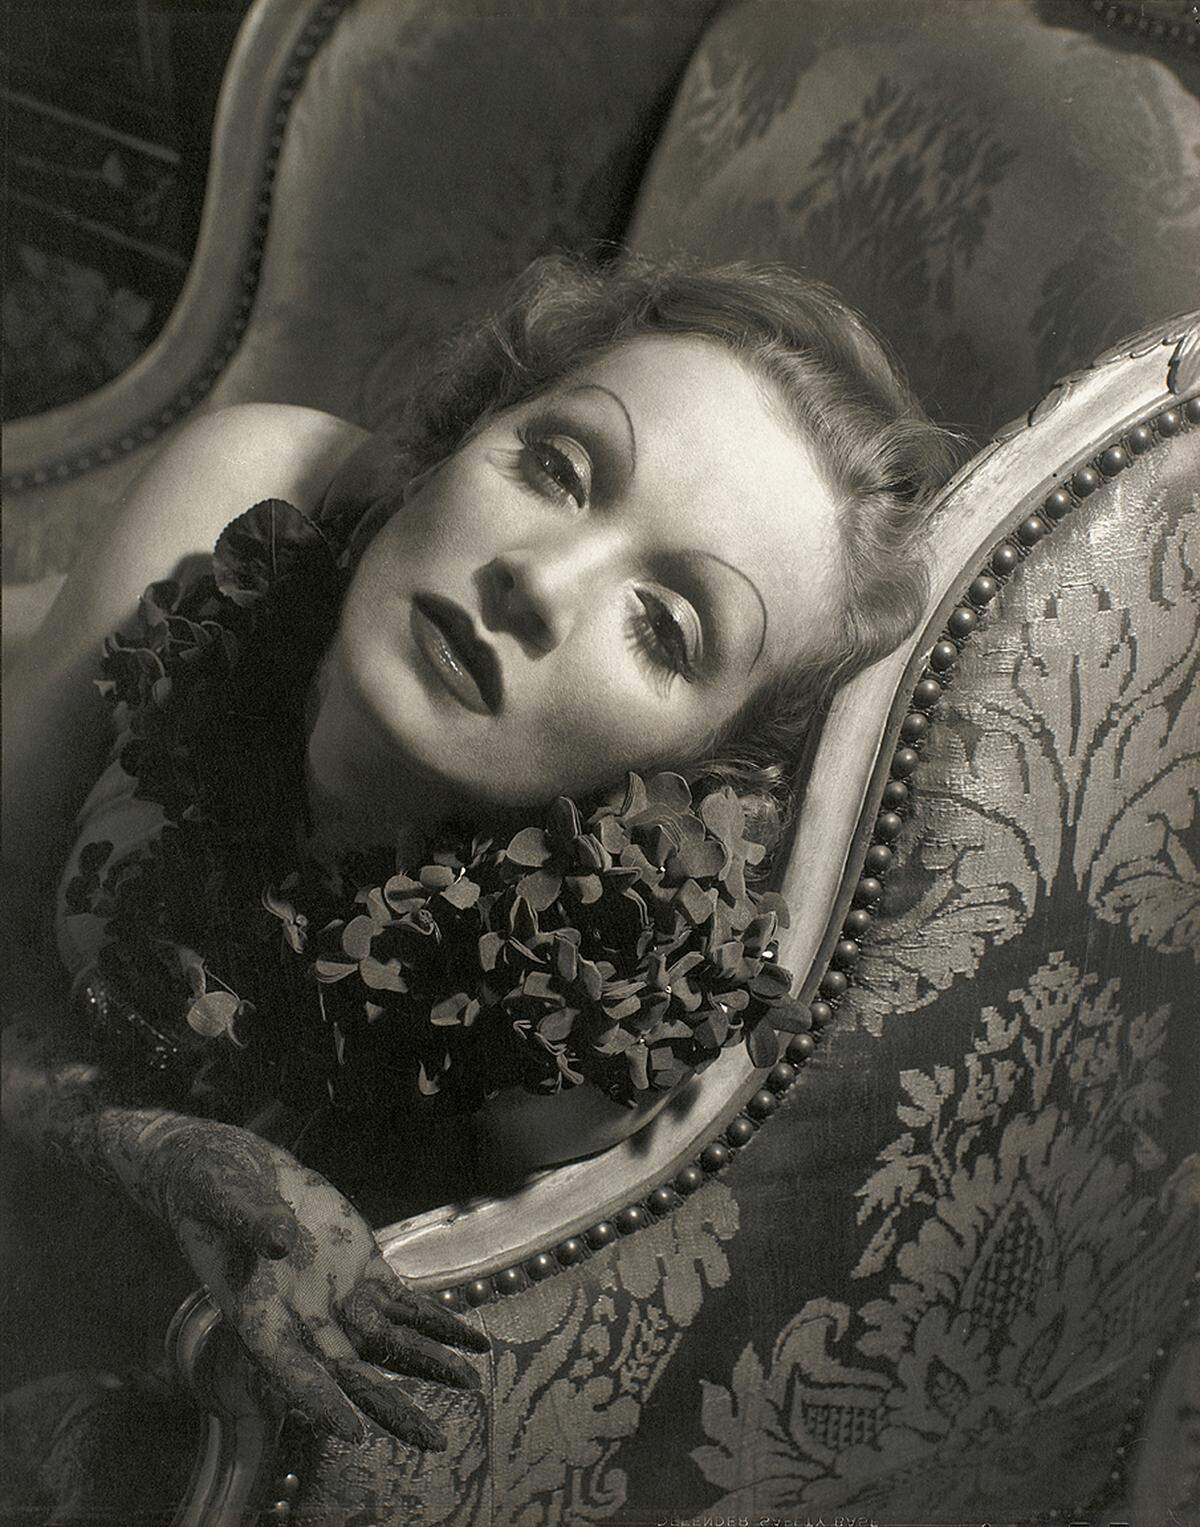 Edward Steichen: Marlene Dietrich, 1934, Courtesy Condé Nast Archive